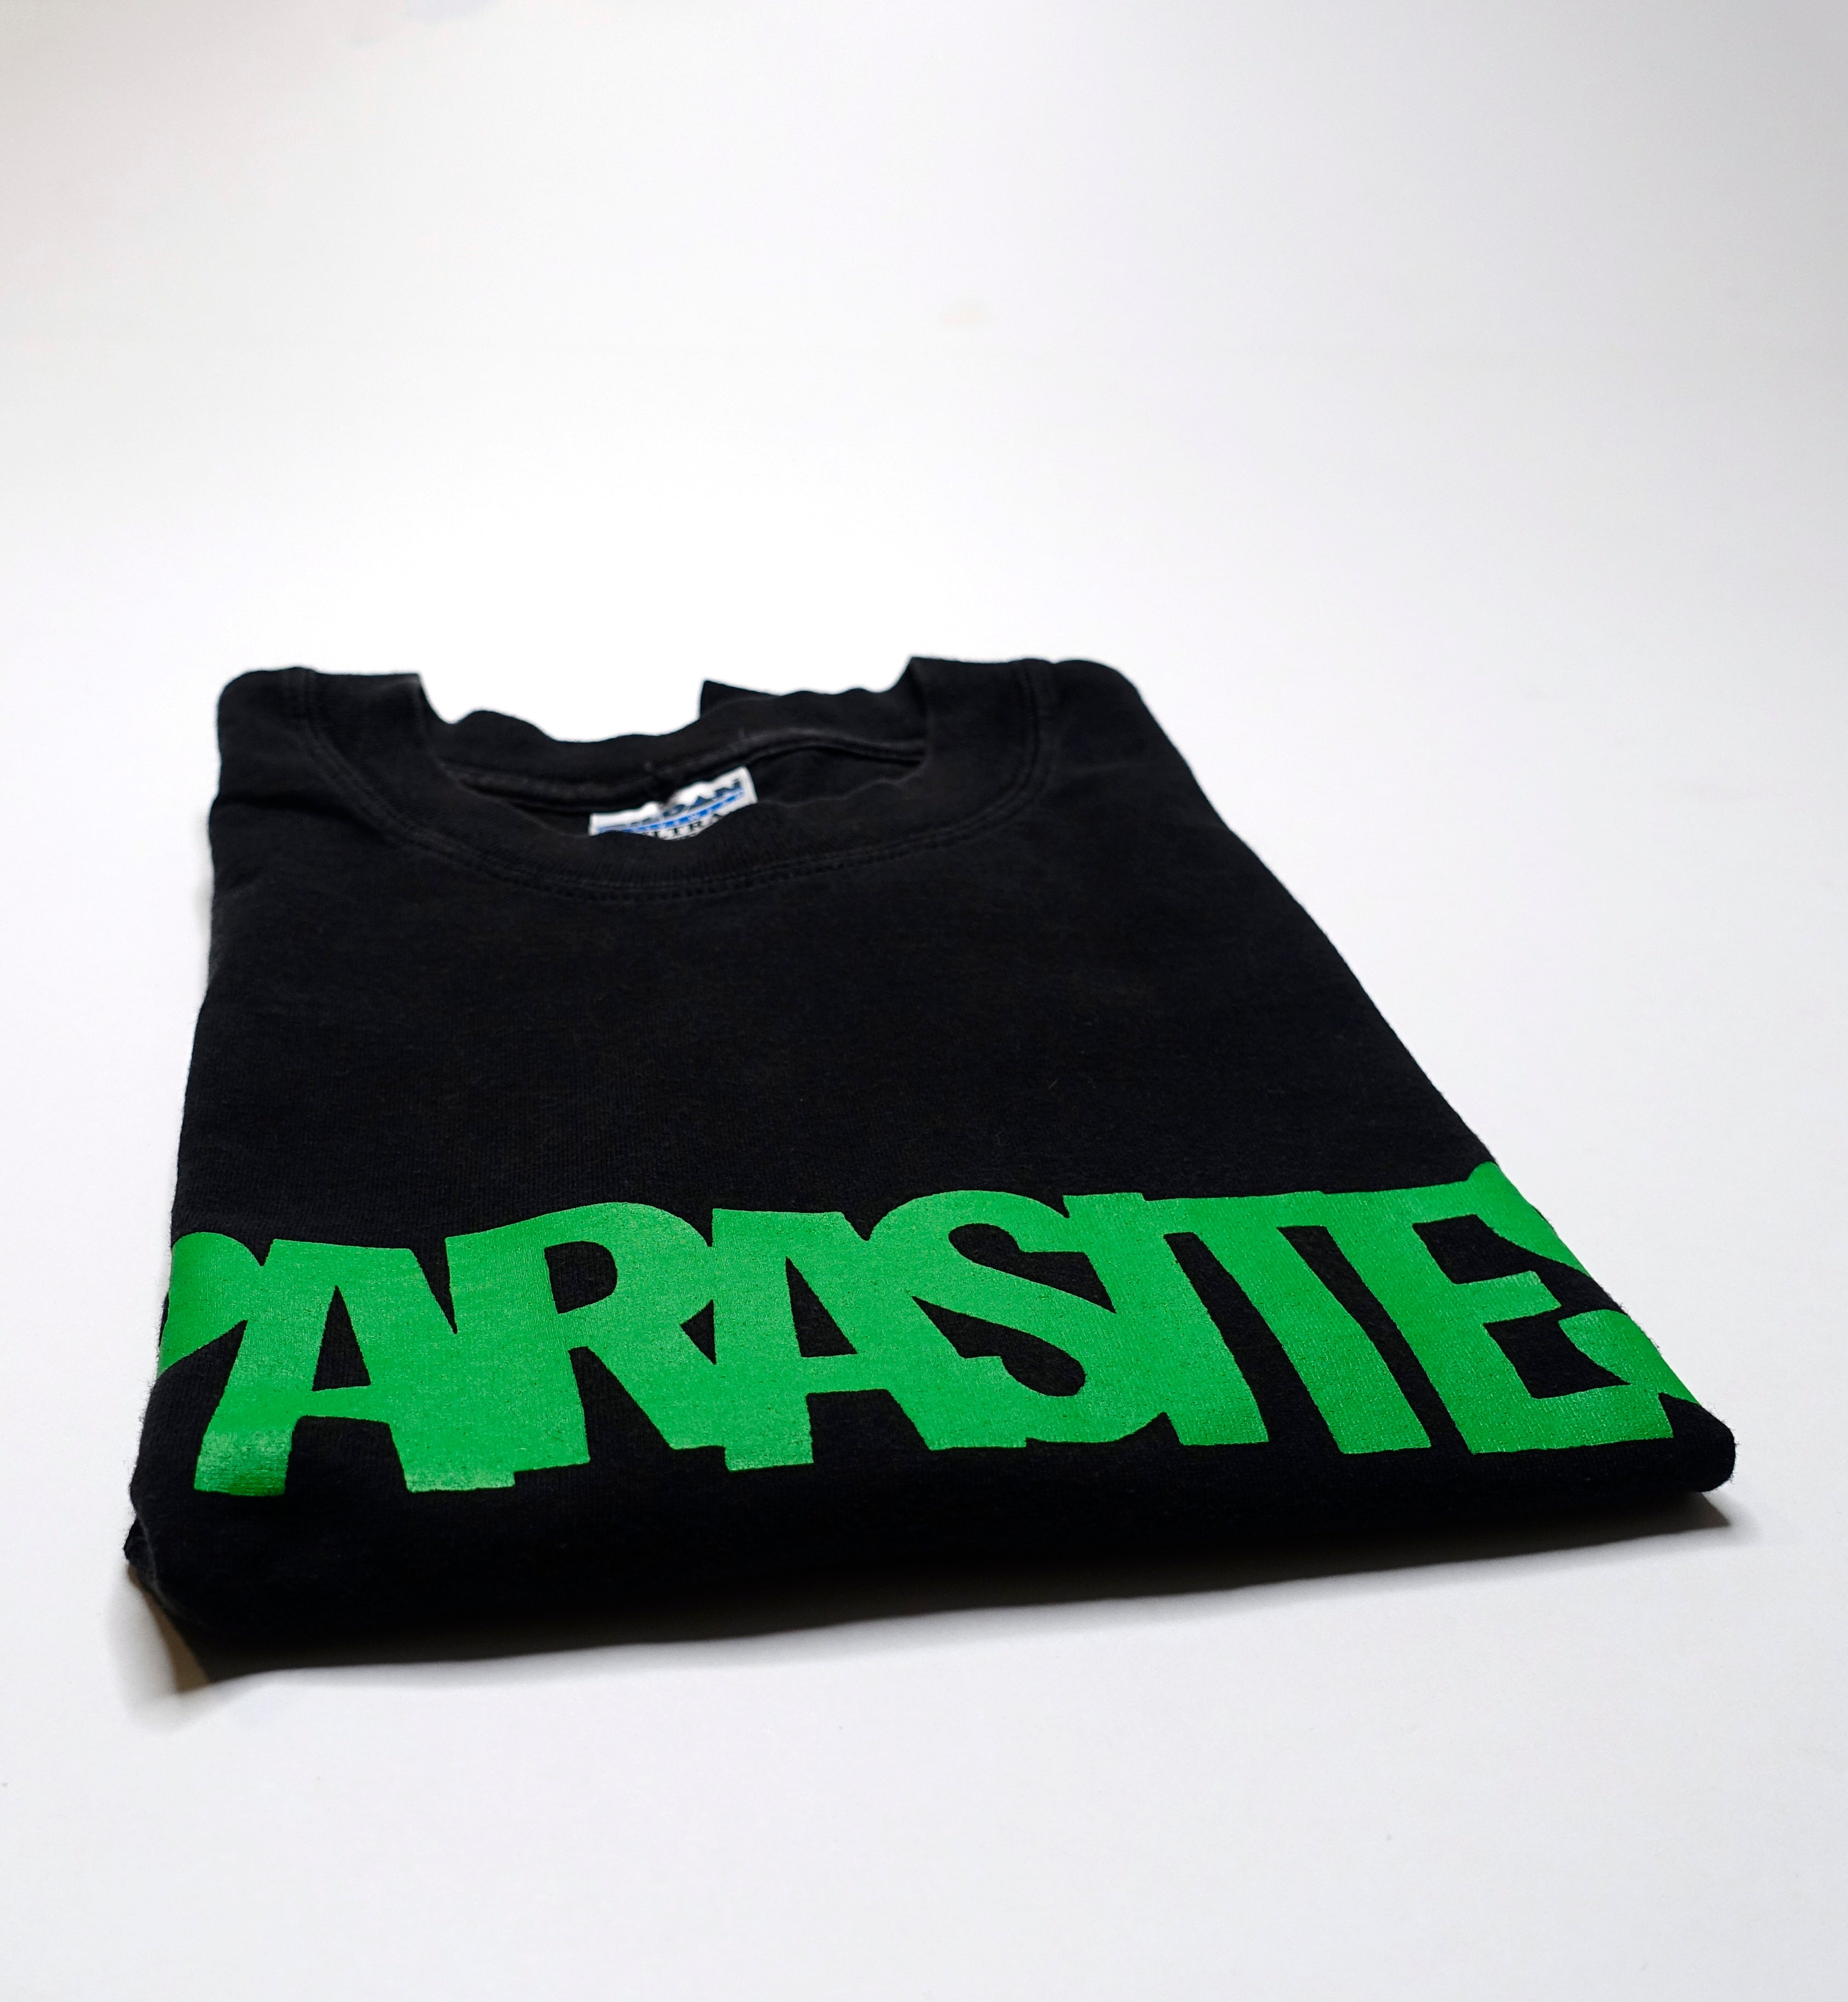 Parasites - Rat Ass Pie 1998 Tour Shirt Size Large